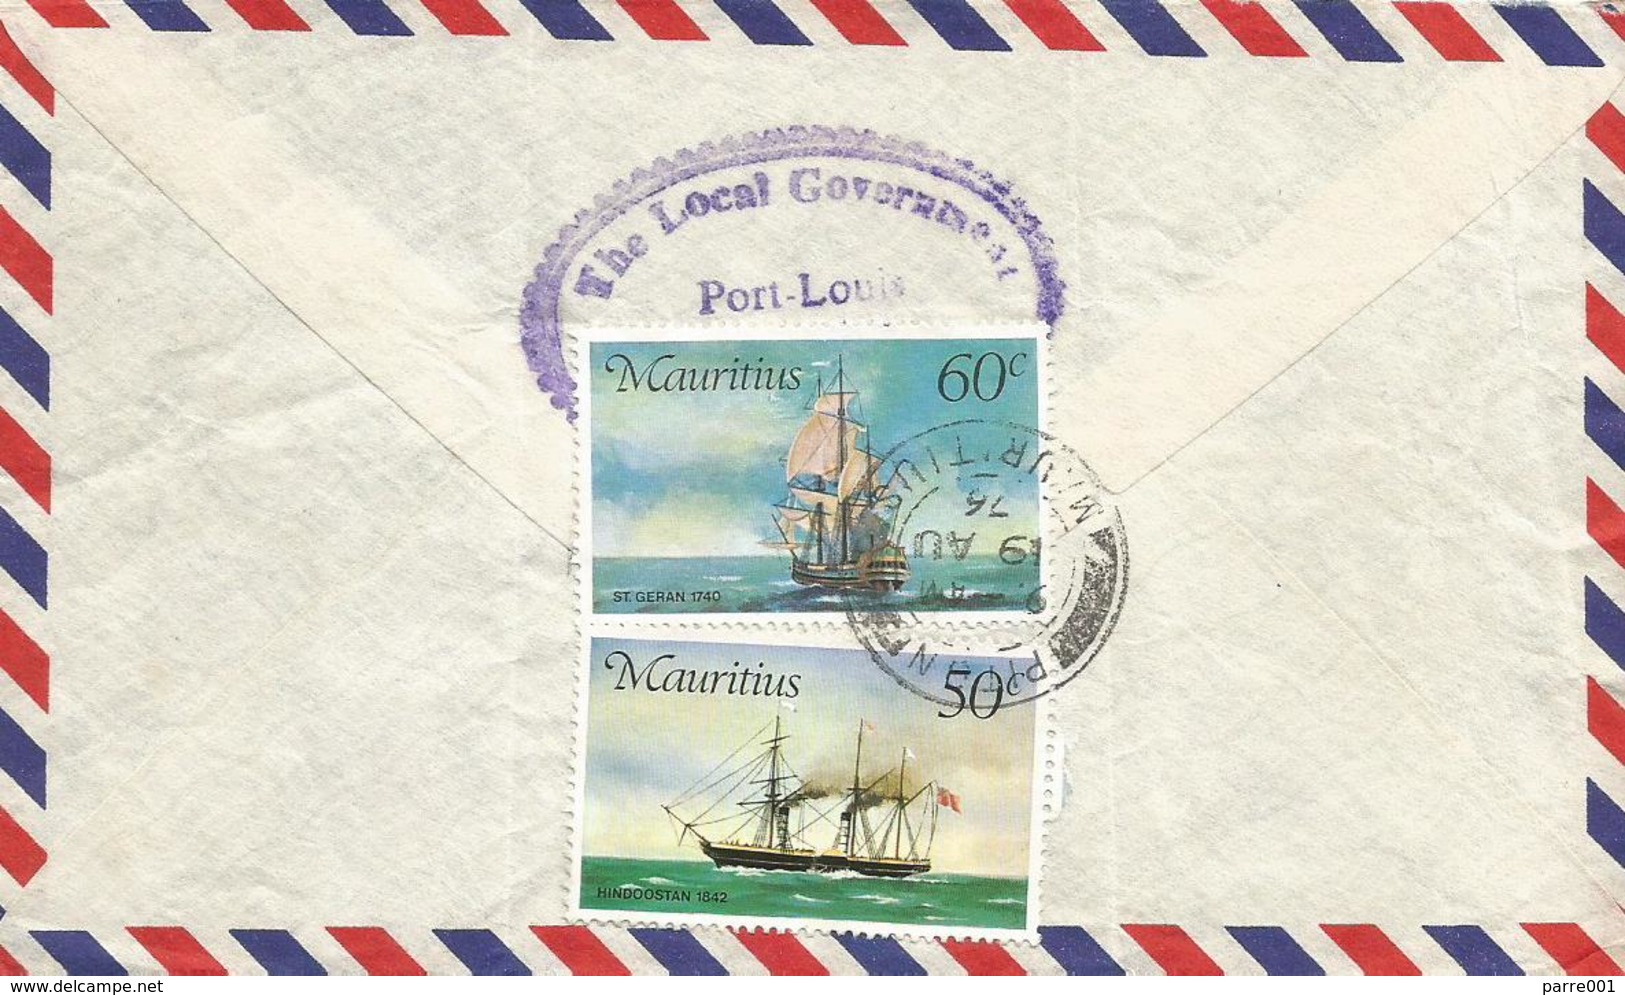 Mauritius 1976 Piton Schooner Saling Ship 50c 60c Registered Cover - Mauritius (1968-...)